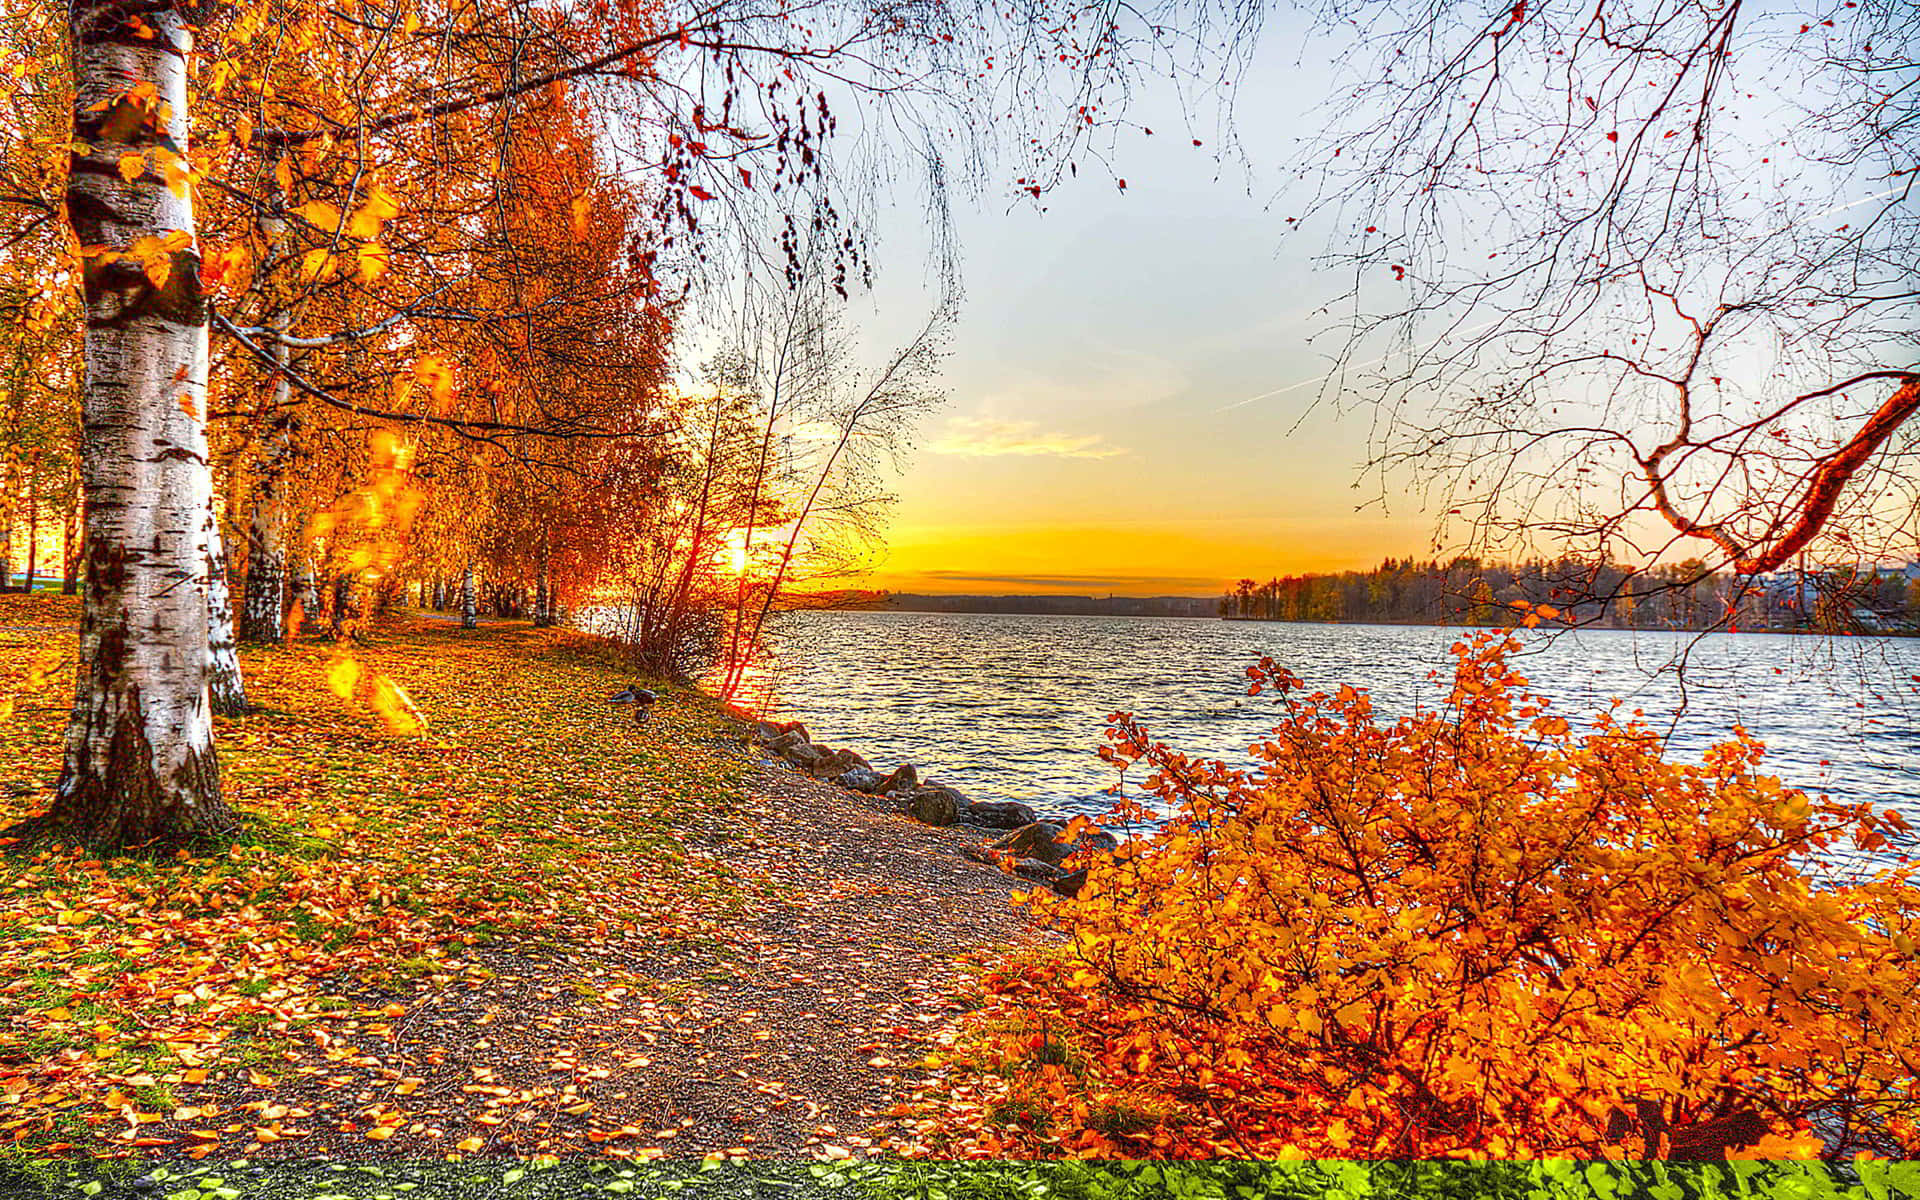 Nyd det smukke efterårs landskab! Wallpaper